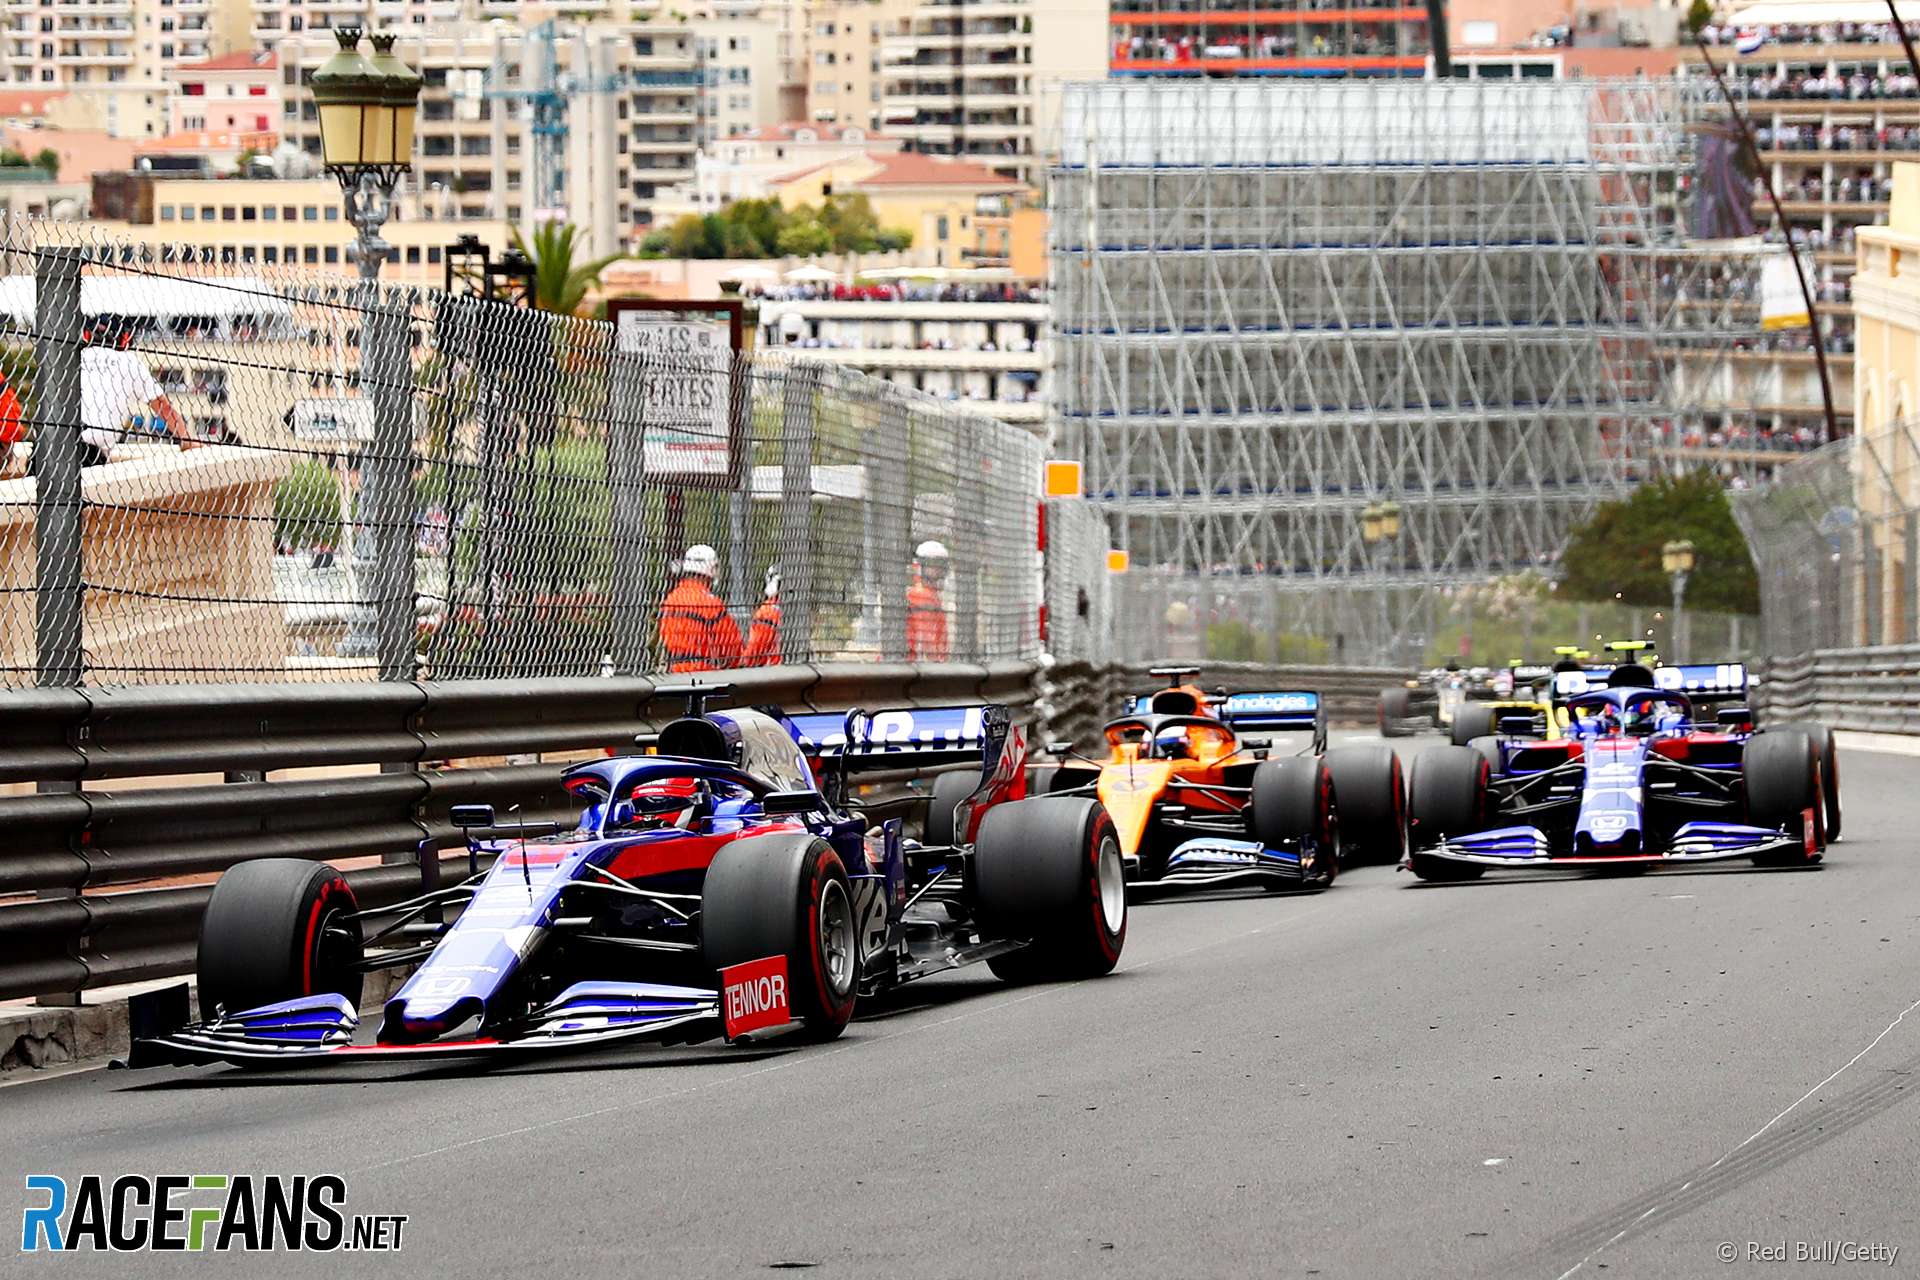 Daniil Kvyat, Carlos Sainz Jnr, Alexander Albon, Monaco, 2019